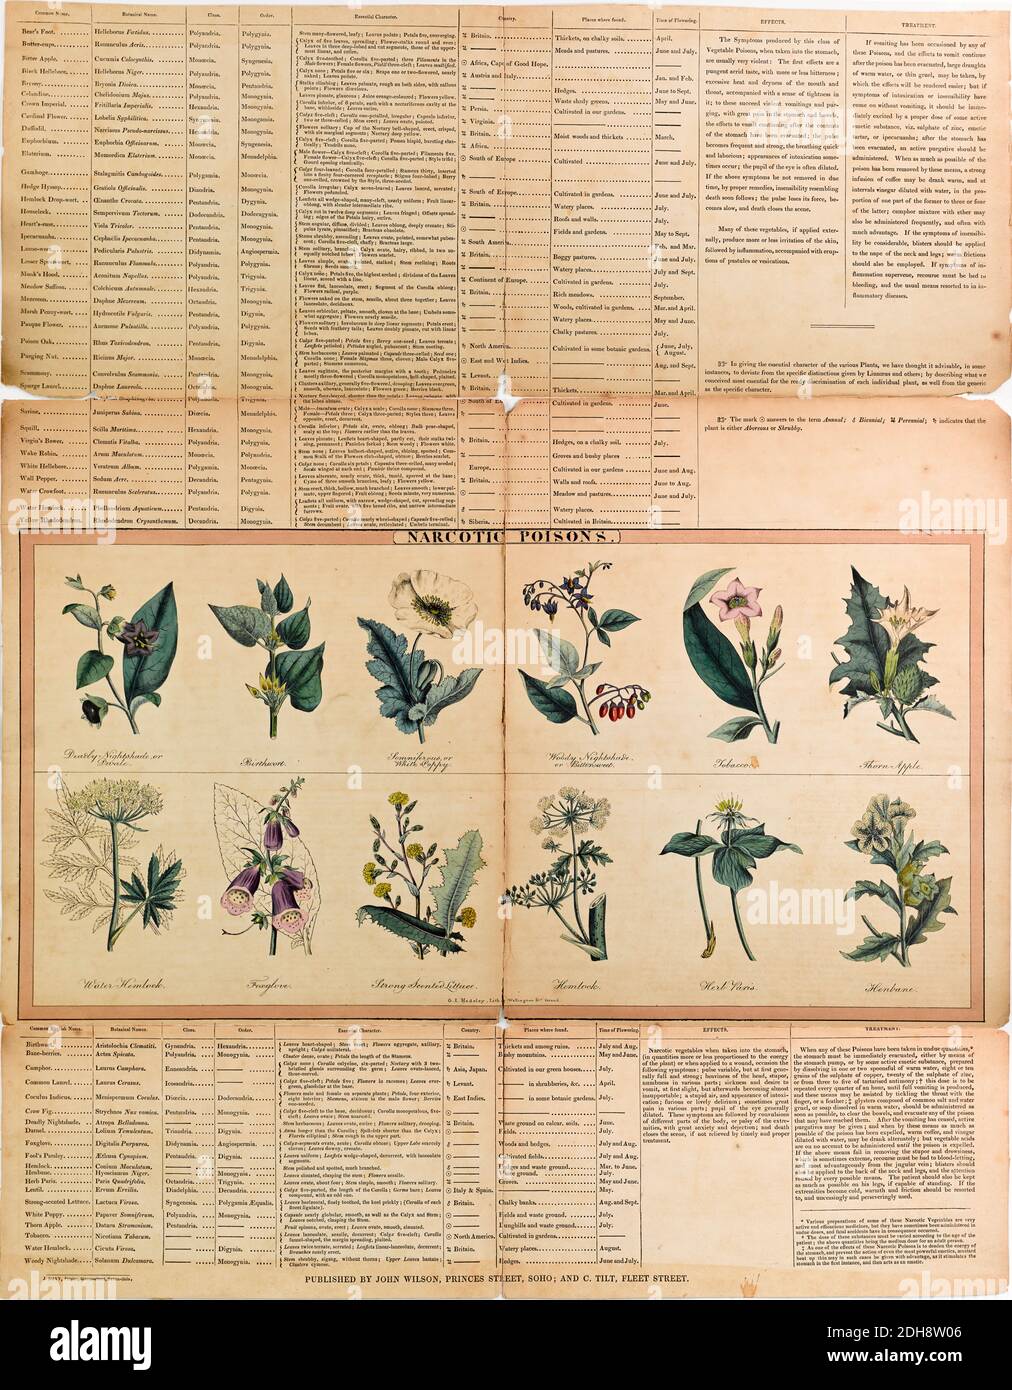 Nome botanico immagini e fotografie stock ad alta risoluzione - Alamy